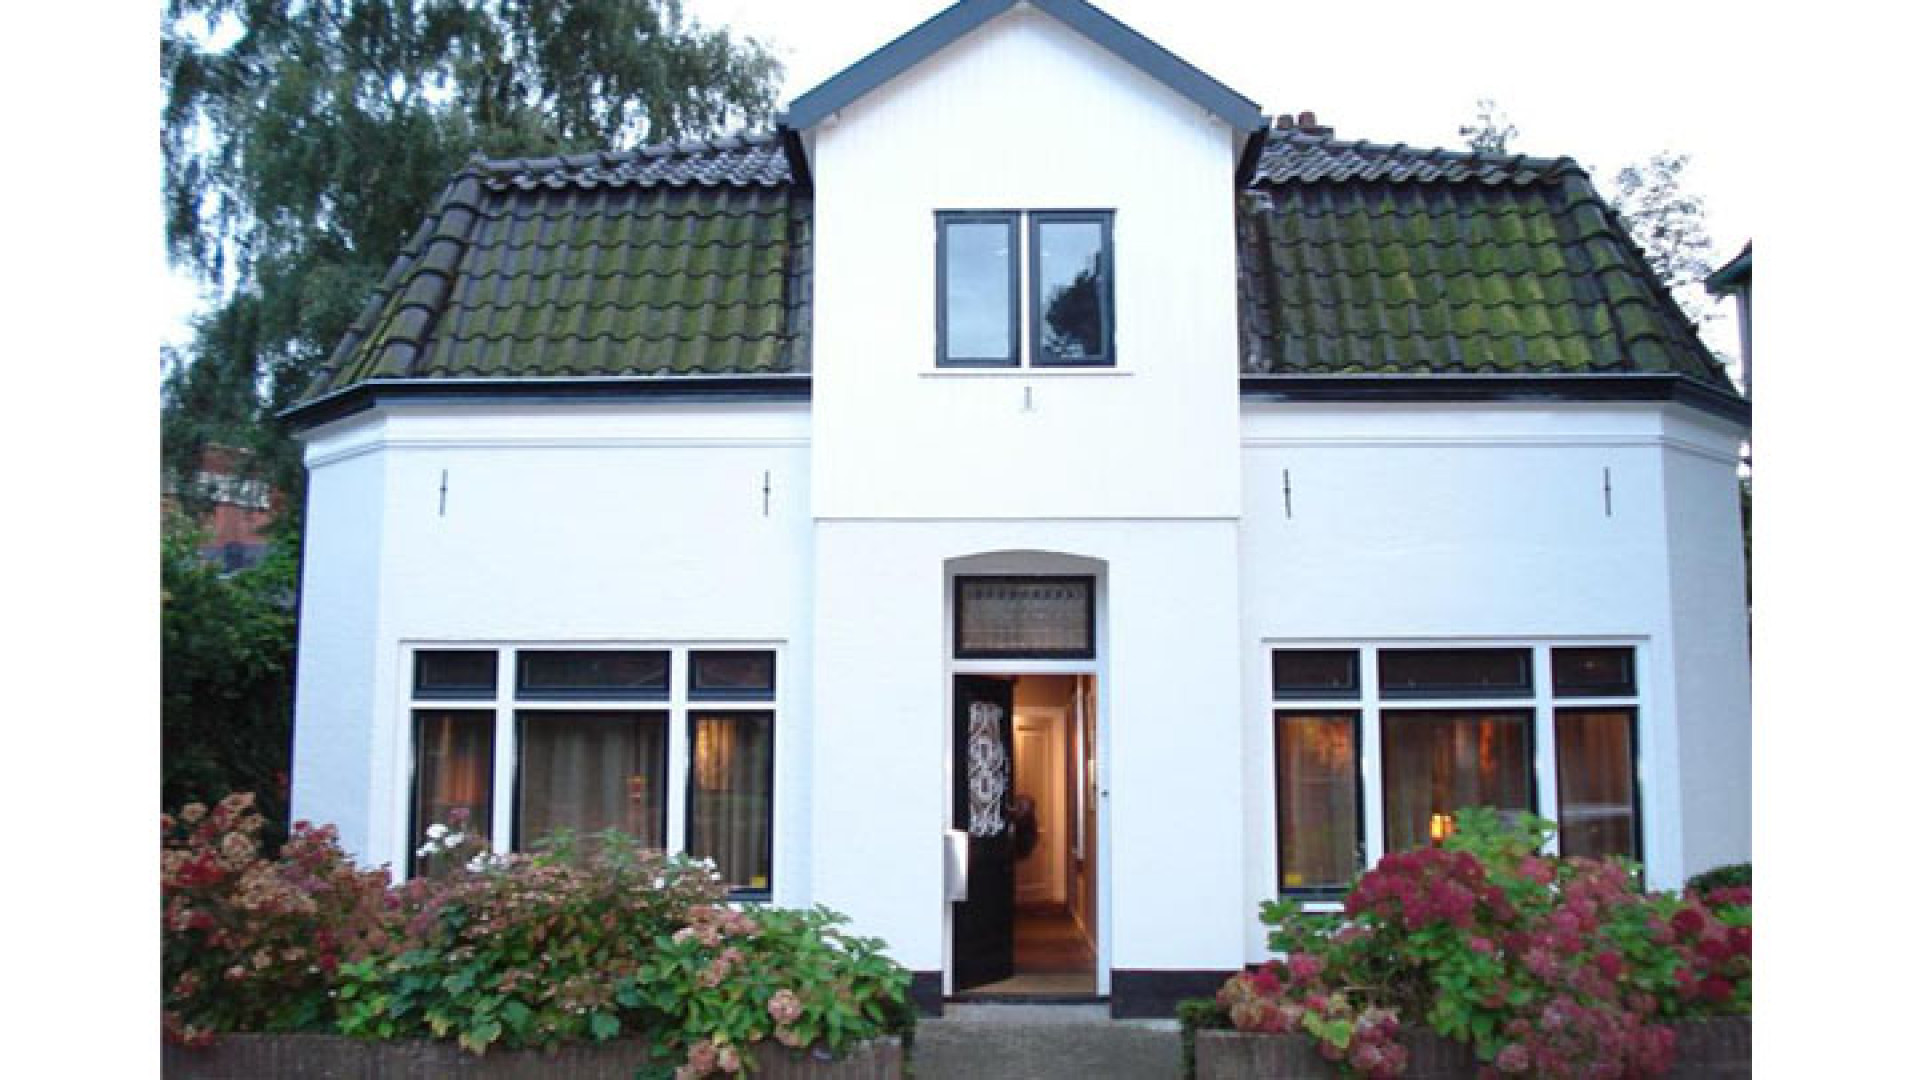 Mariska Hulscher zet haar villa in Baarn te koop. Zie foto's 1